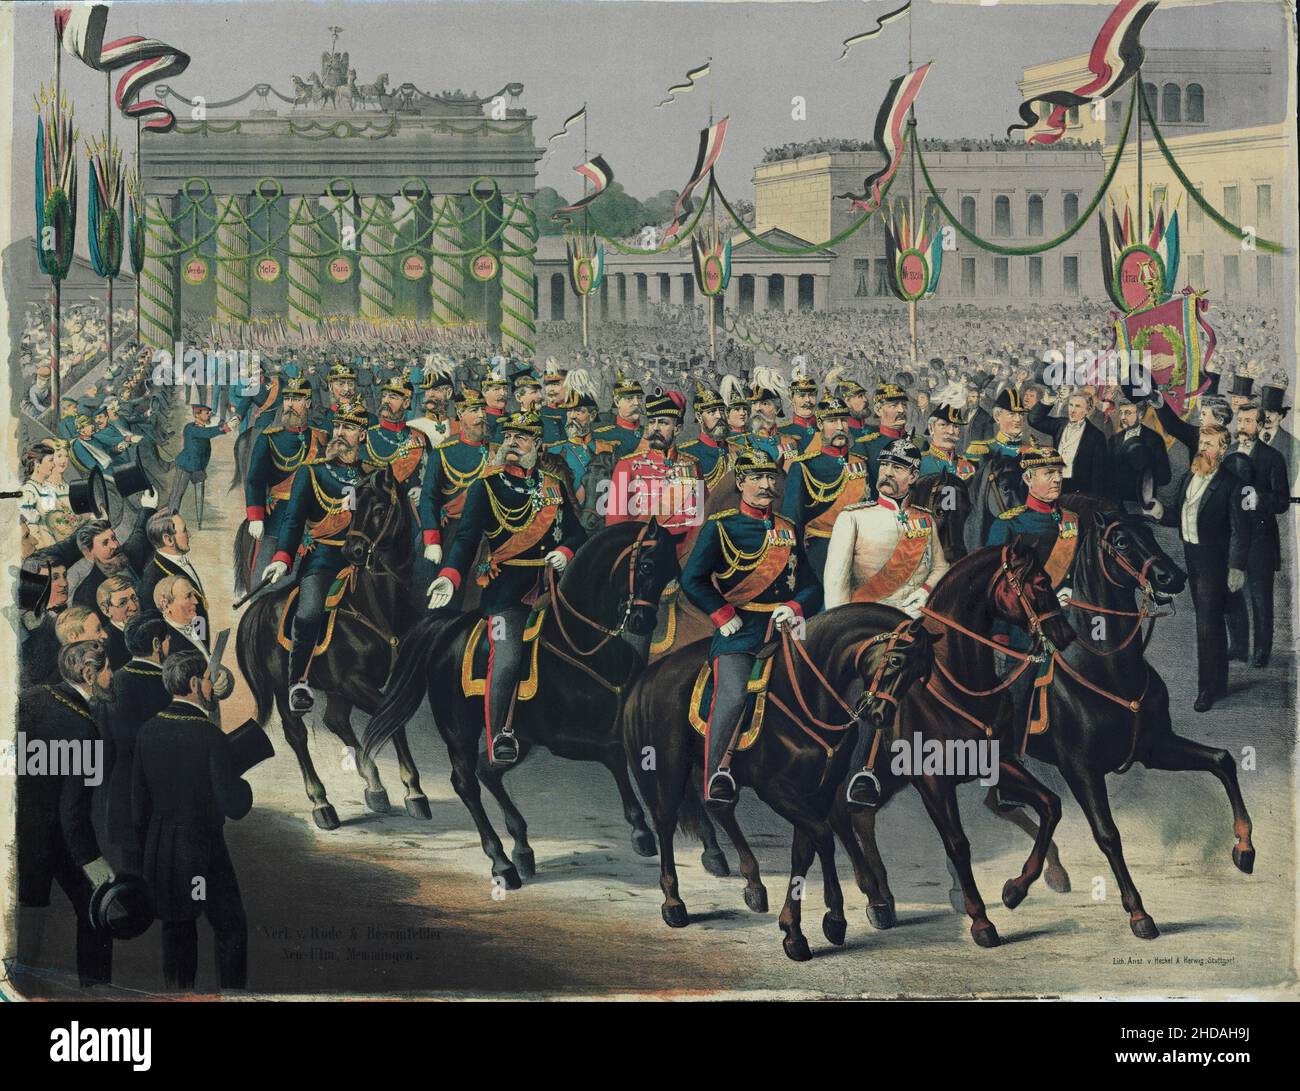 Vintage-Farblithographie des Eintritts in Berlin am 16. Juni 1871. 1871 Parade zu Ehren der Niederlage Frankreichs im französisch-preußischen Krieg. Stockfoto